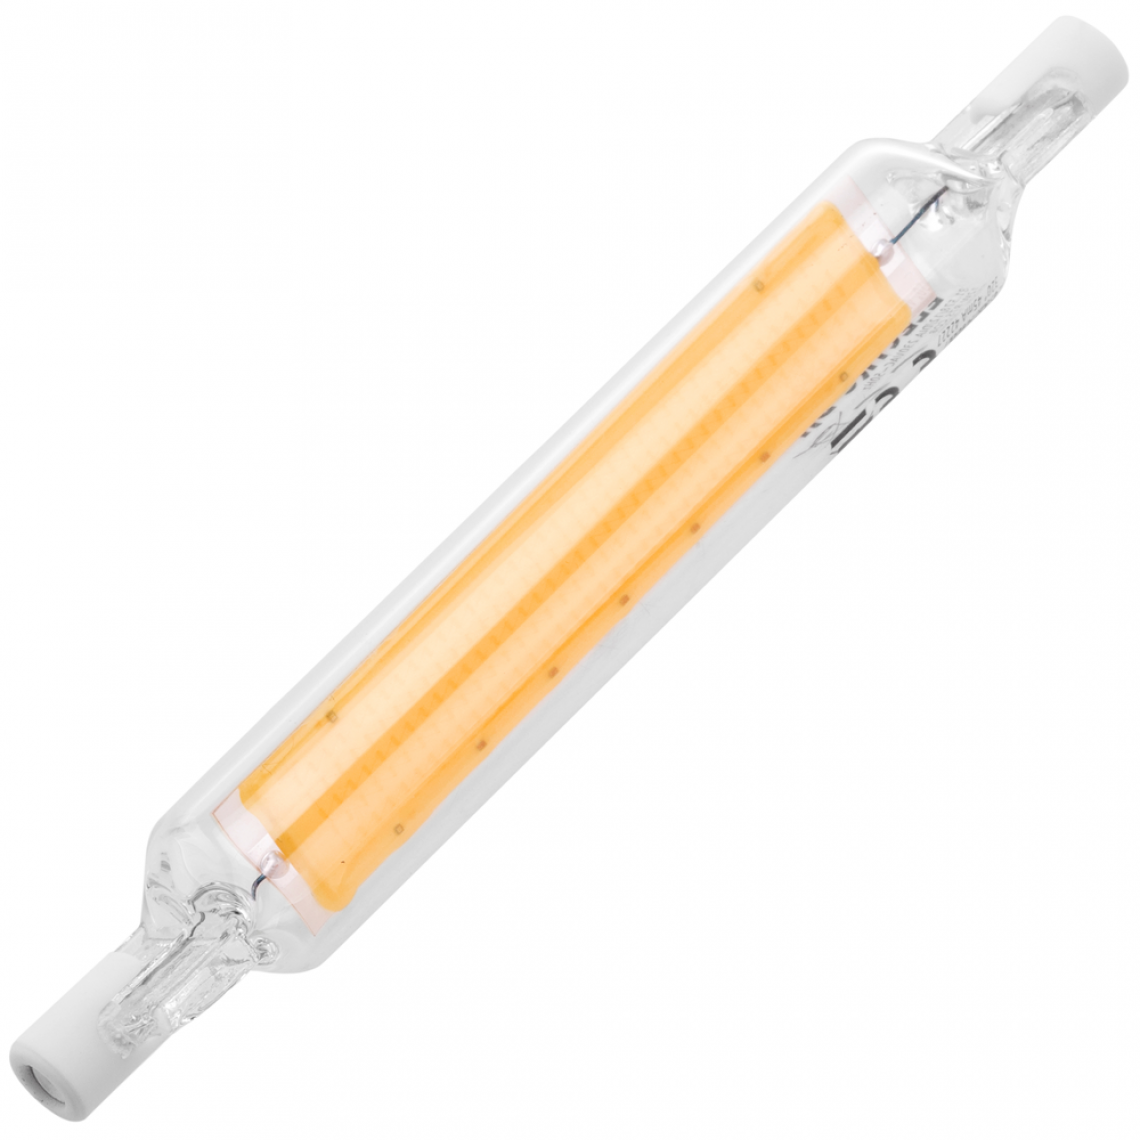 Bematik - Ampoule LED R7S 230VAC 12W blanc chaud 3000K - Tubes et néons